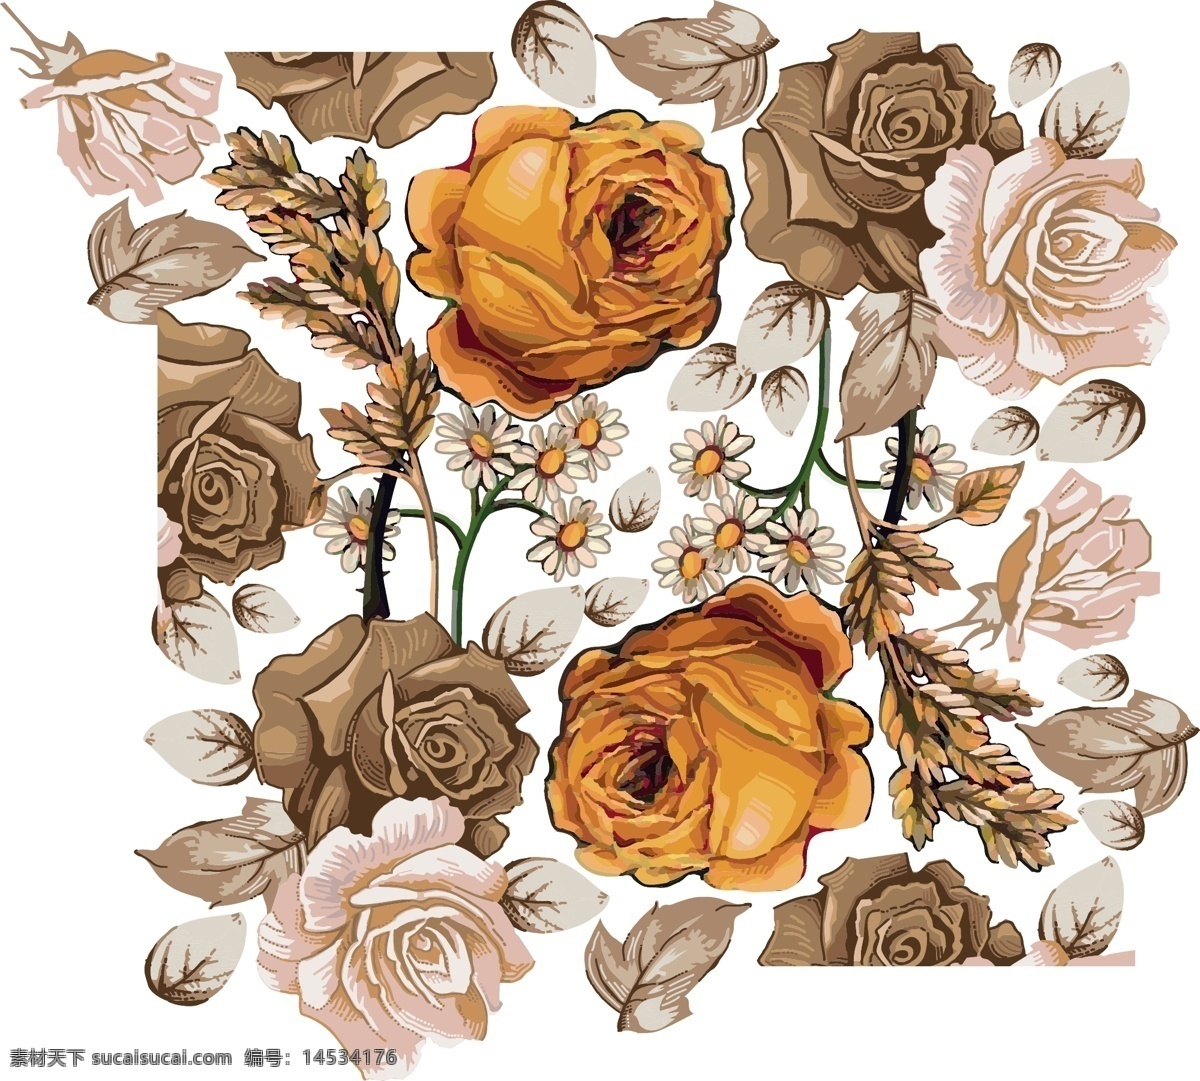 古风 典雅 线条 手绘 花卉 矢量 图案 设 线条手绘花卉 矢量图案 底纹边框 花边花纹